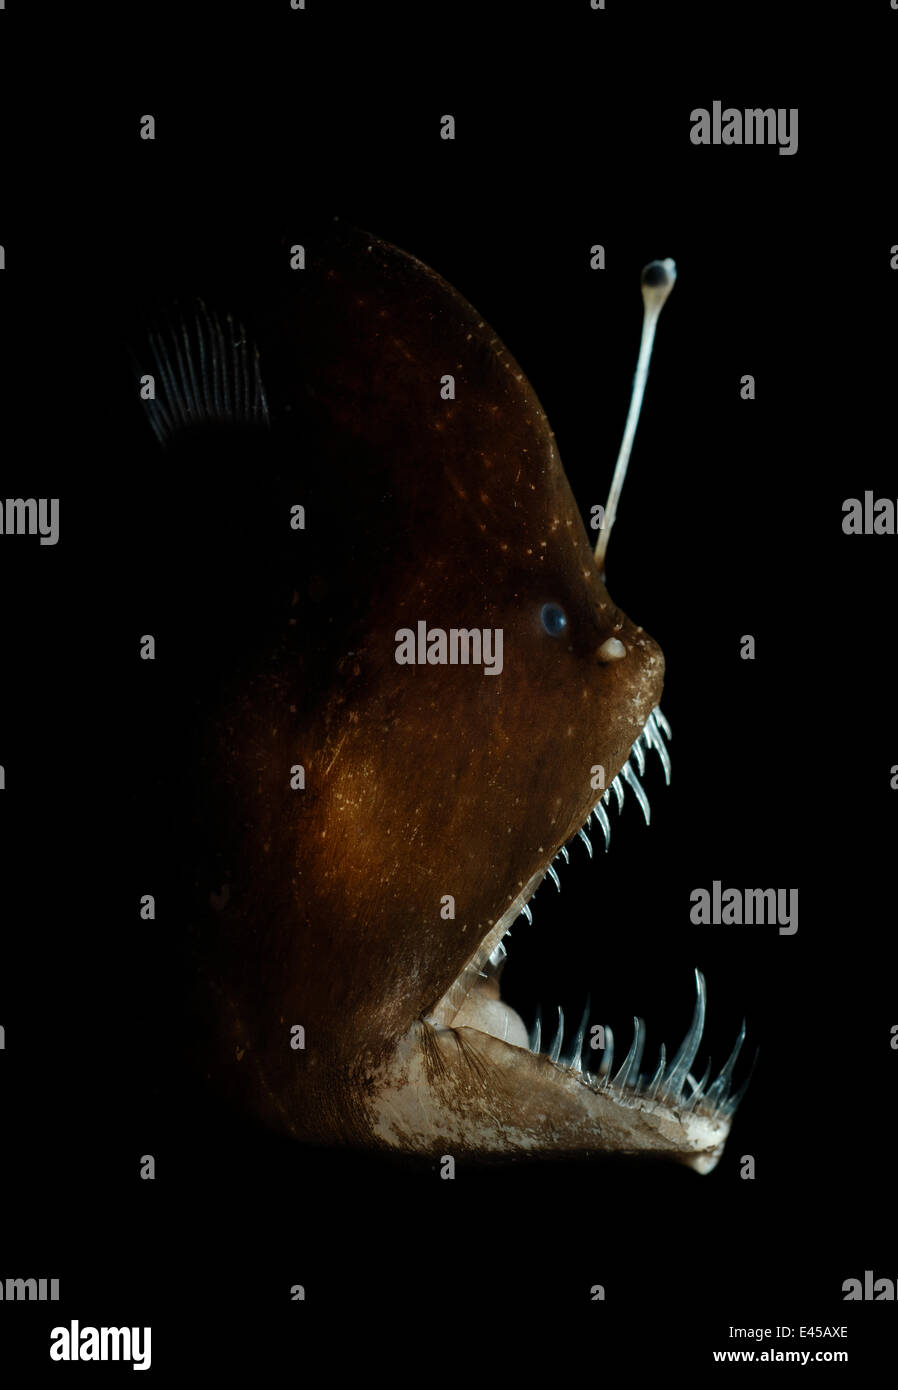 Murrays abgründigen Seeteufel (Melanocetus Murrayi) Atlantik. Tiefseefische mit Biolumineszenz Köder verwendet, um Beute anzulocken. Die Biolumineszenz wird von symbiotischen Bakterien produziert; Diese Bakterien werden gedacht, um die Esca über eine externe Leitung eingeben. Stockfoto